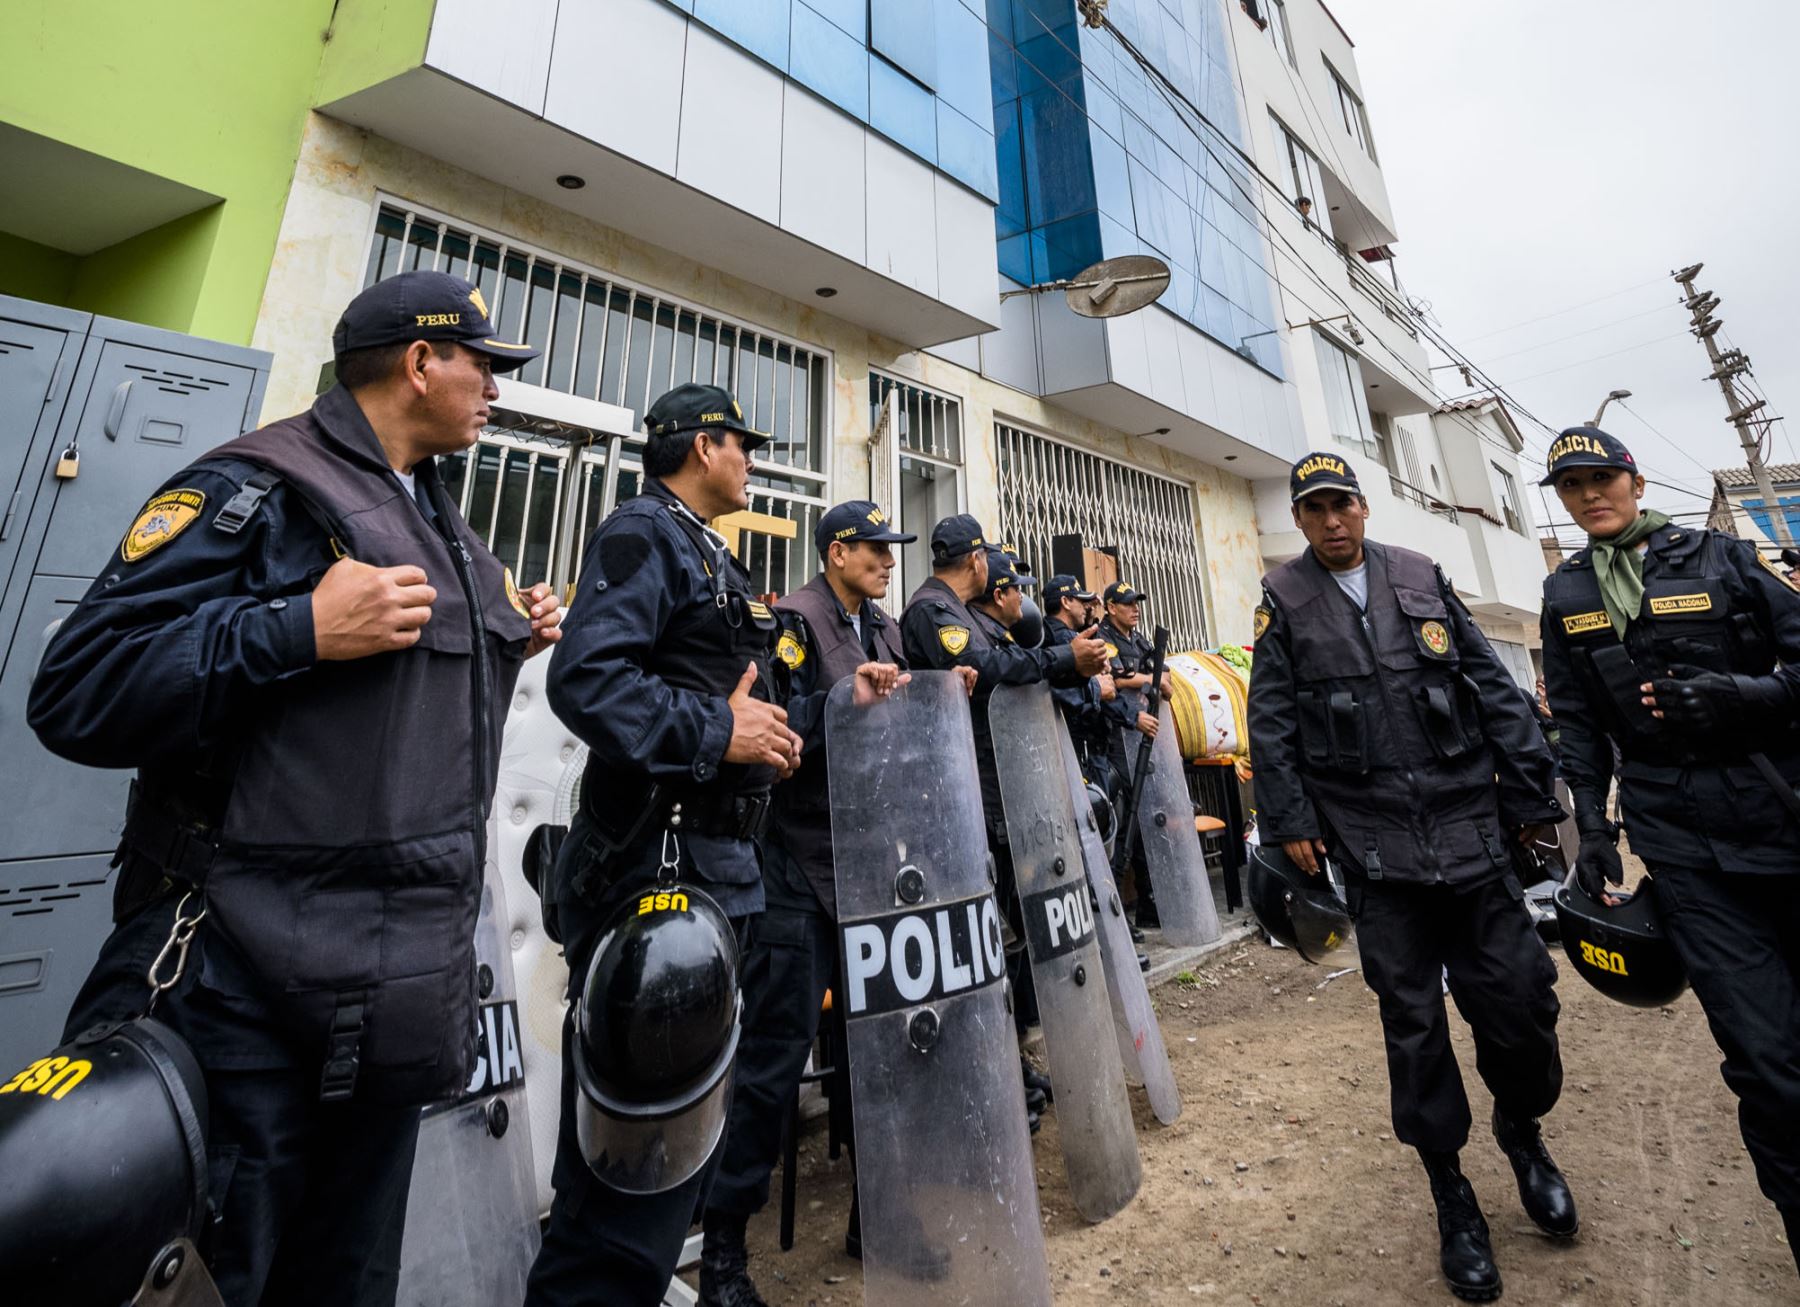 El Ejecutivo prorrogó el estado de emergencia declarado en los distritos de Chalhuahuacho y Mara, ubicados en la provincia de Cotabambas, región Apurímac, y en el distrito de Capacmarca, en la provincia de Chumbivilcas, región Cusco, y dispuso que la Policía Nacional del Perú mantenga el control del orden interno con el apoyo de las Fuerzas Armadas. ANDINA/Difusión